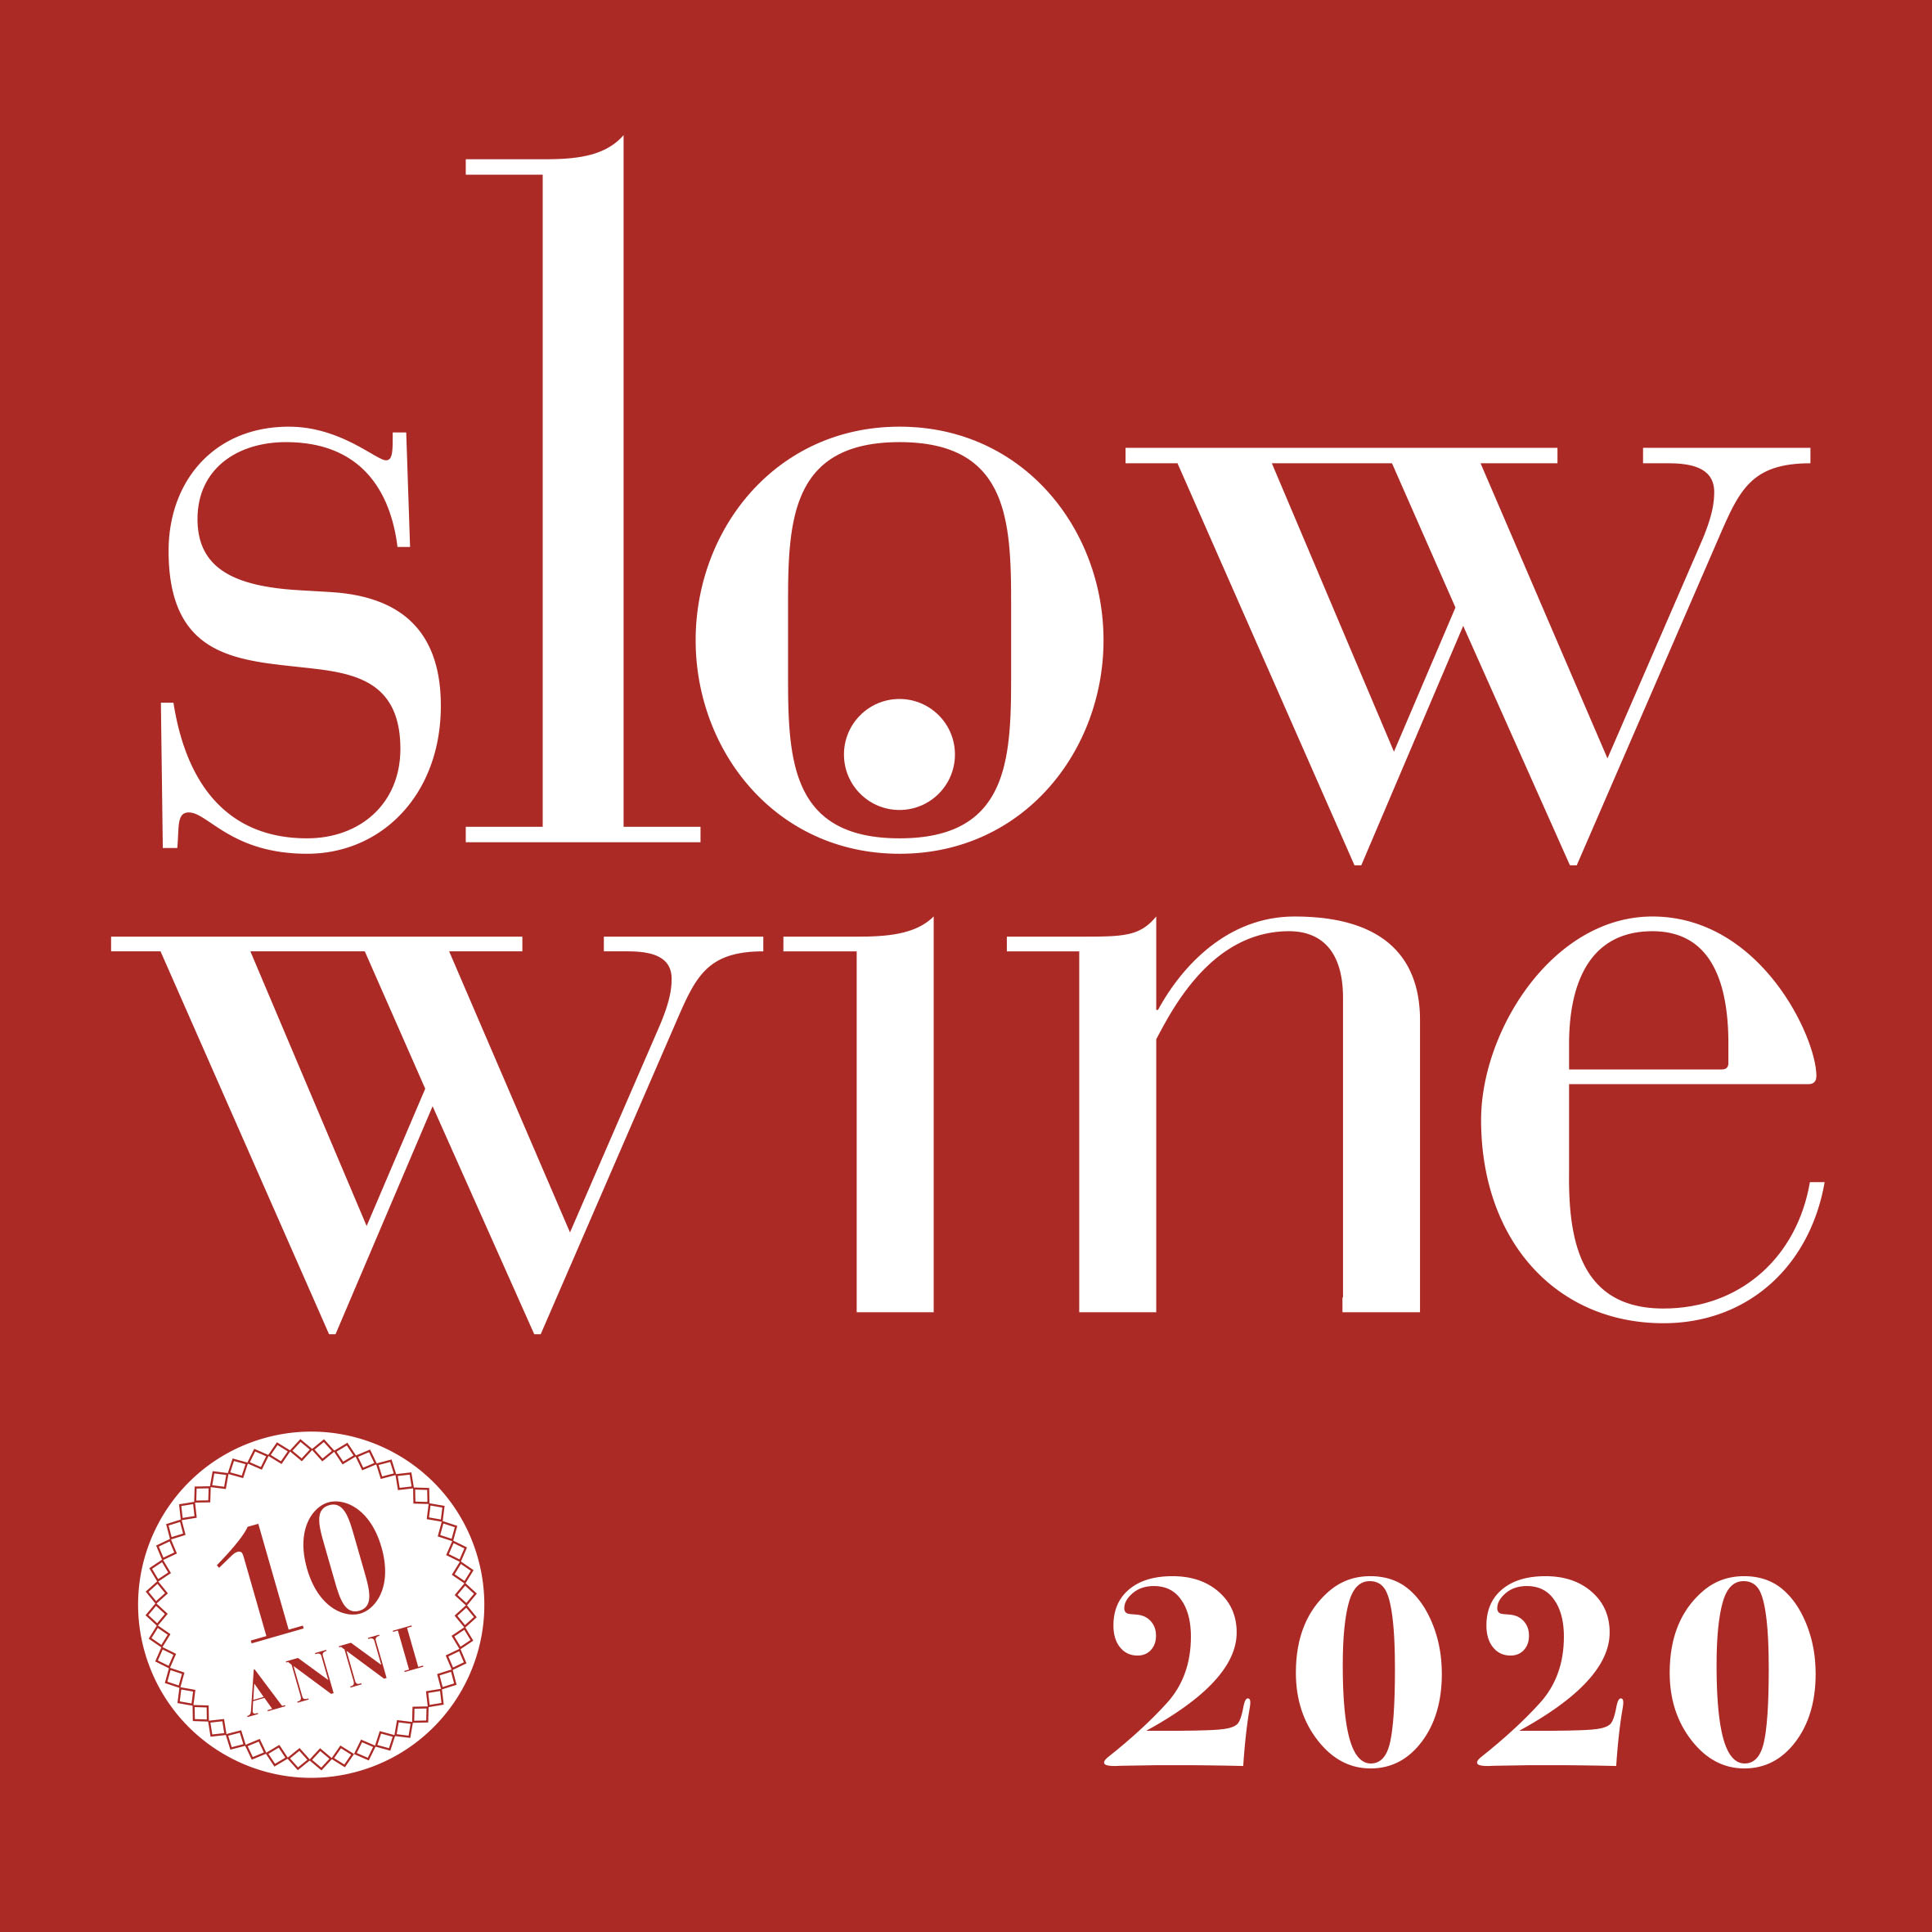 Risultato immagini per slow wine 2020